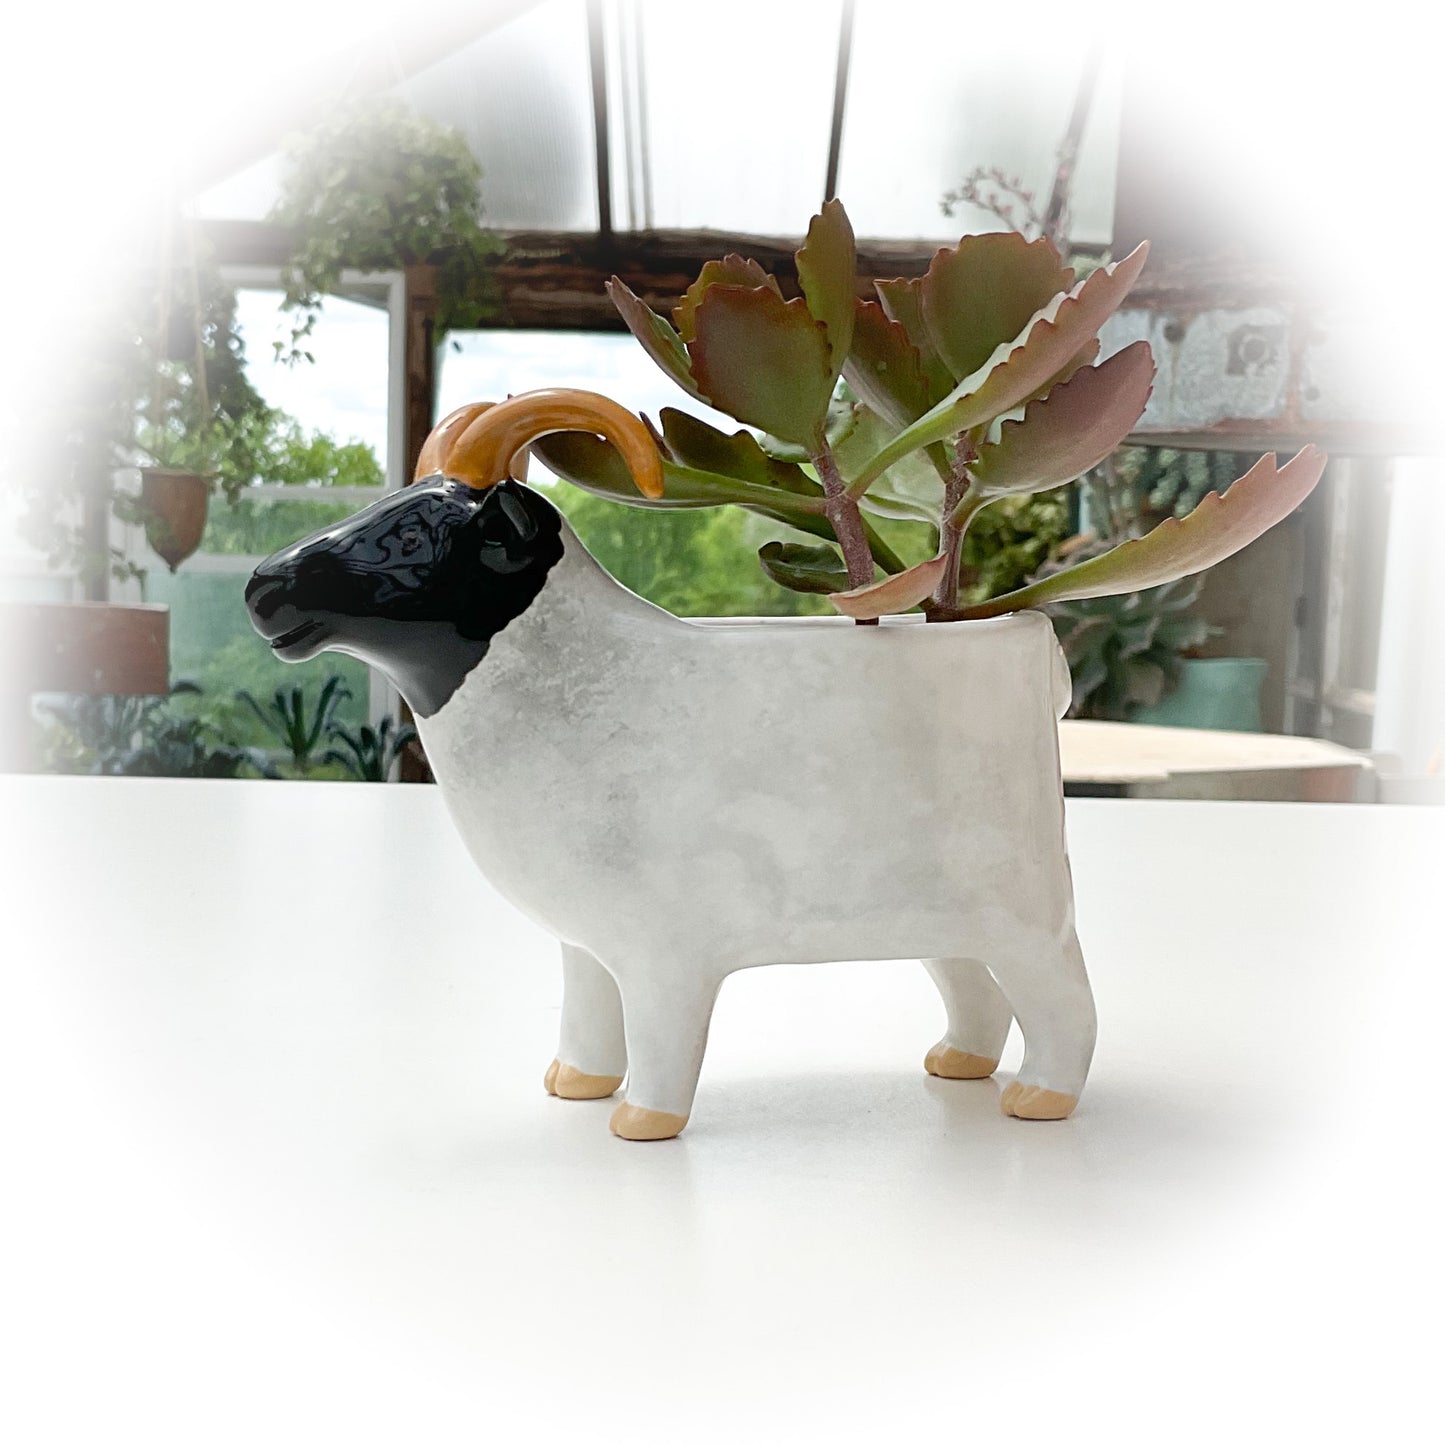 Black and White Sheep Pot - Ceramic Sheep Planter